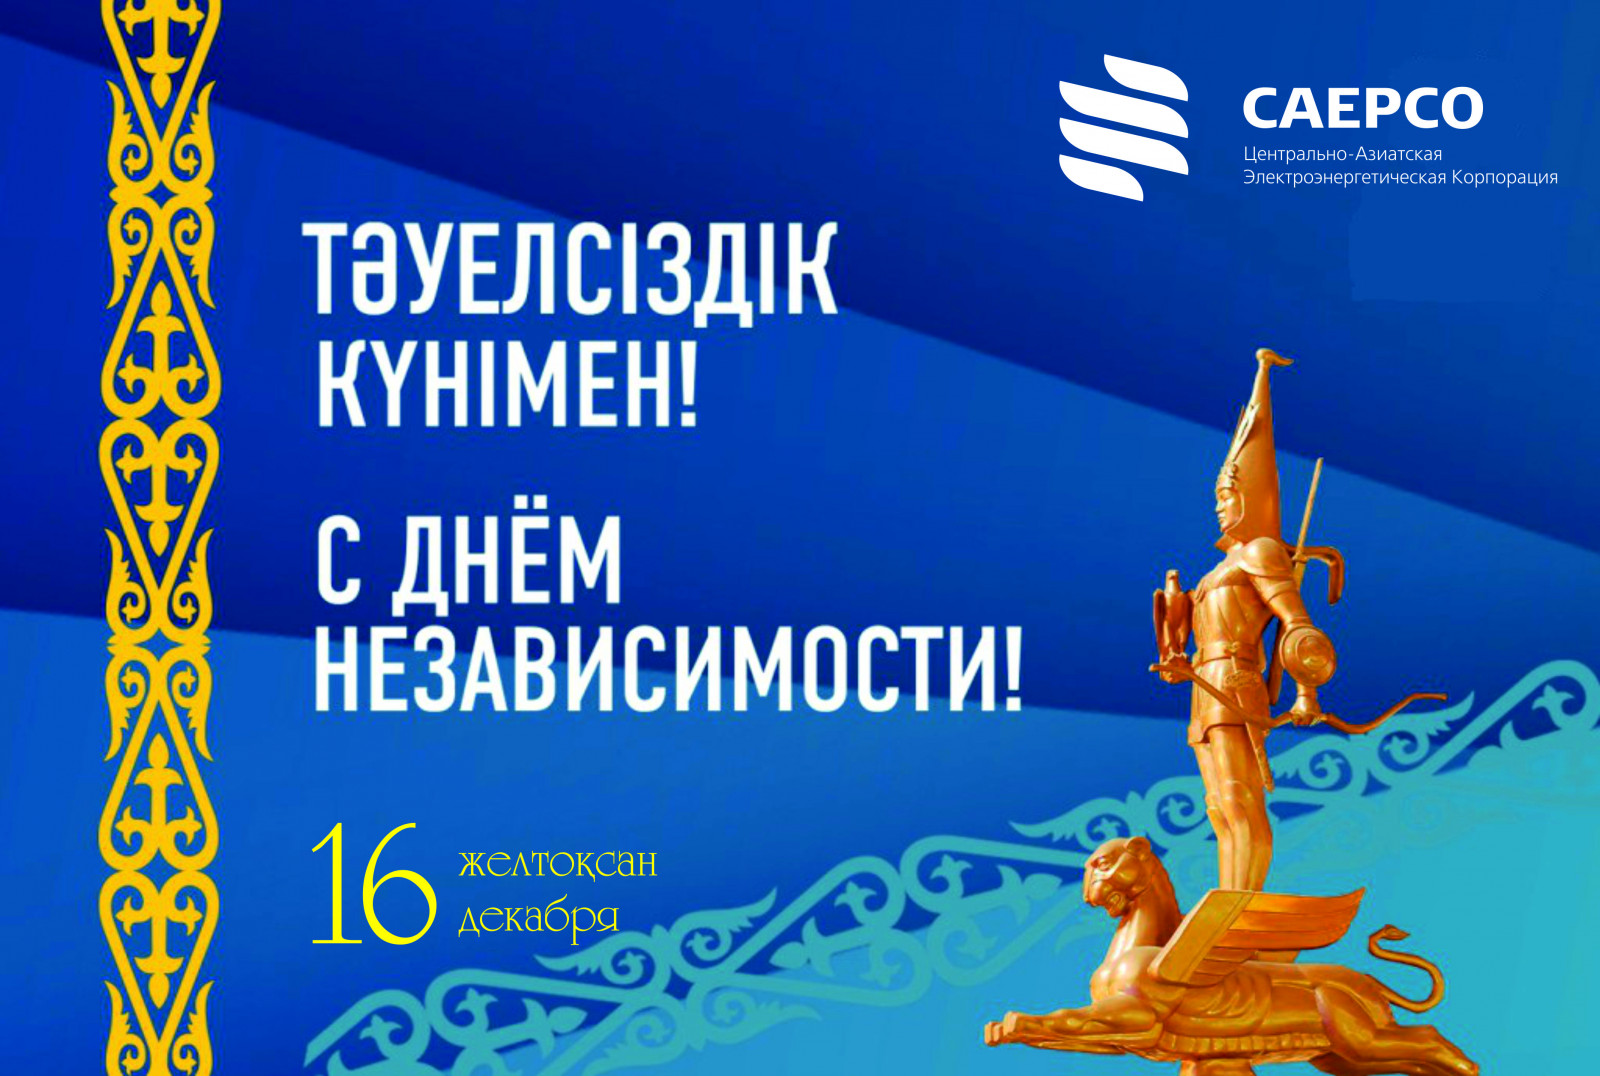 Поздравления на День независимости Казахстана в прозе